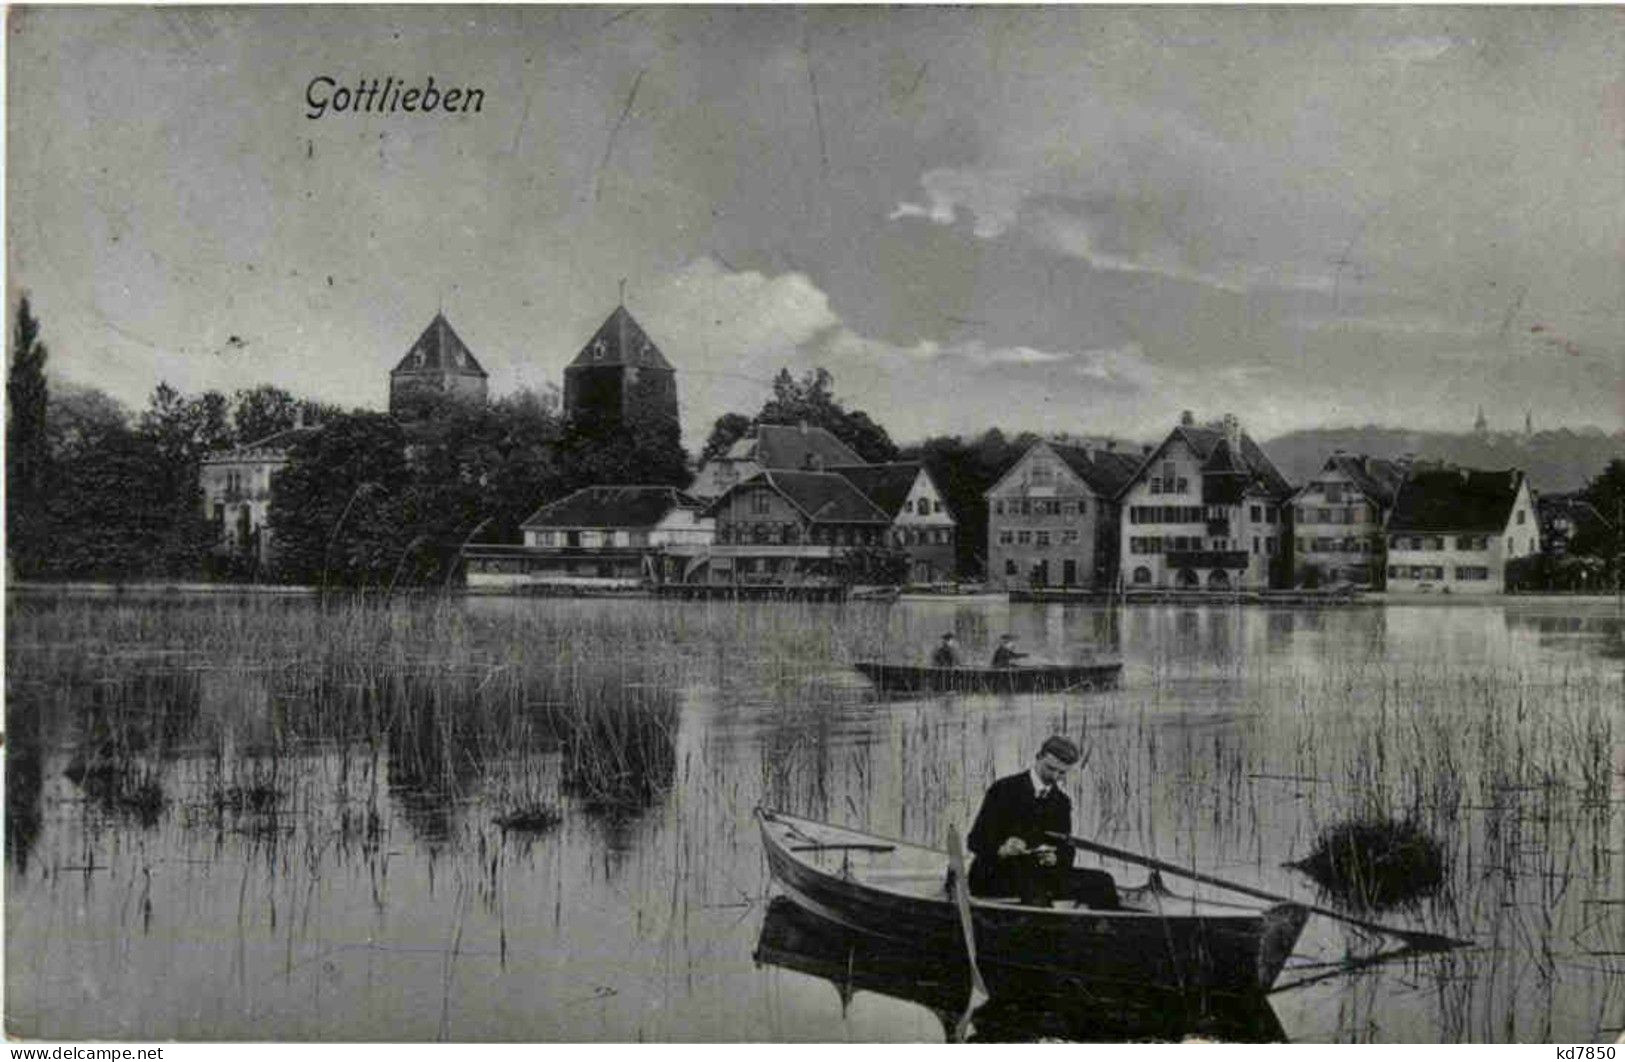 Gottlieben - Gottlieben